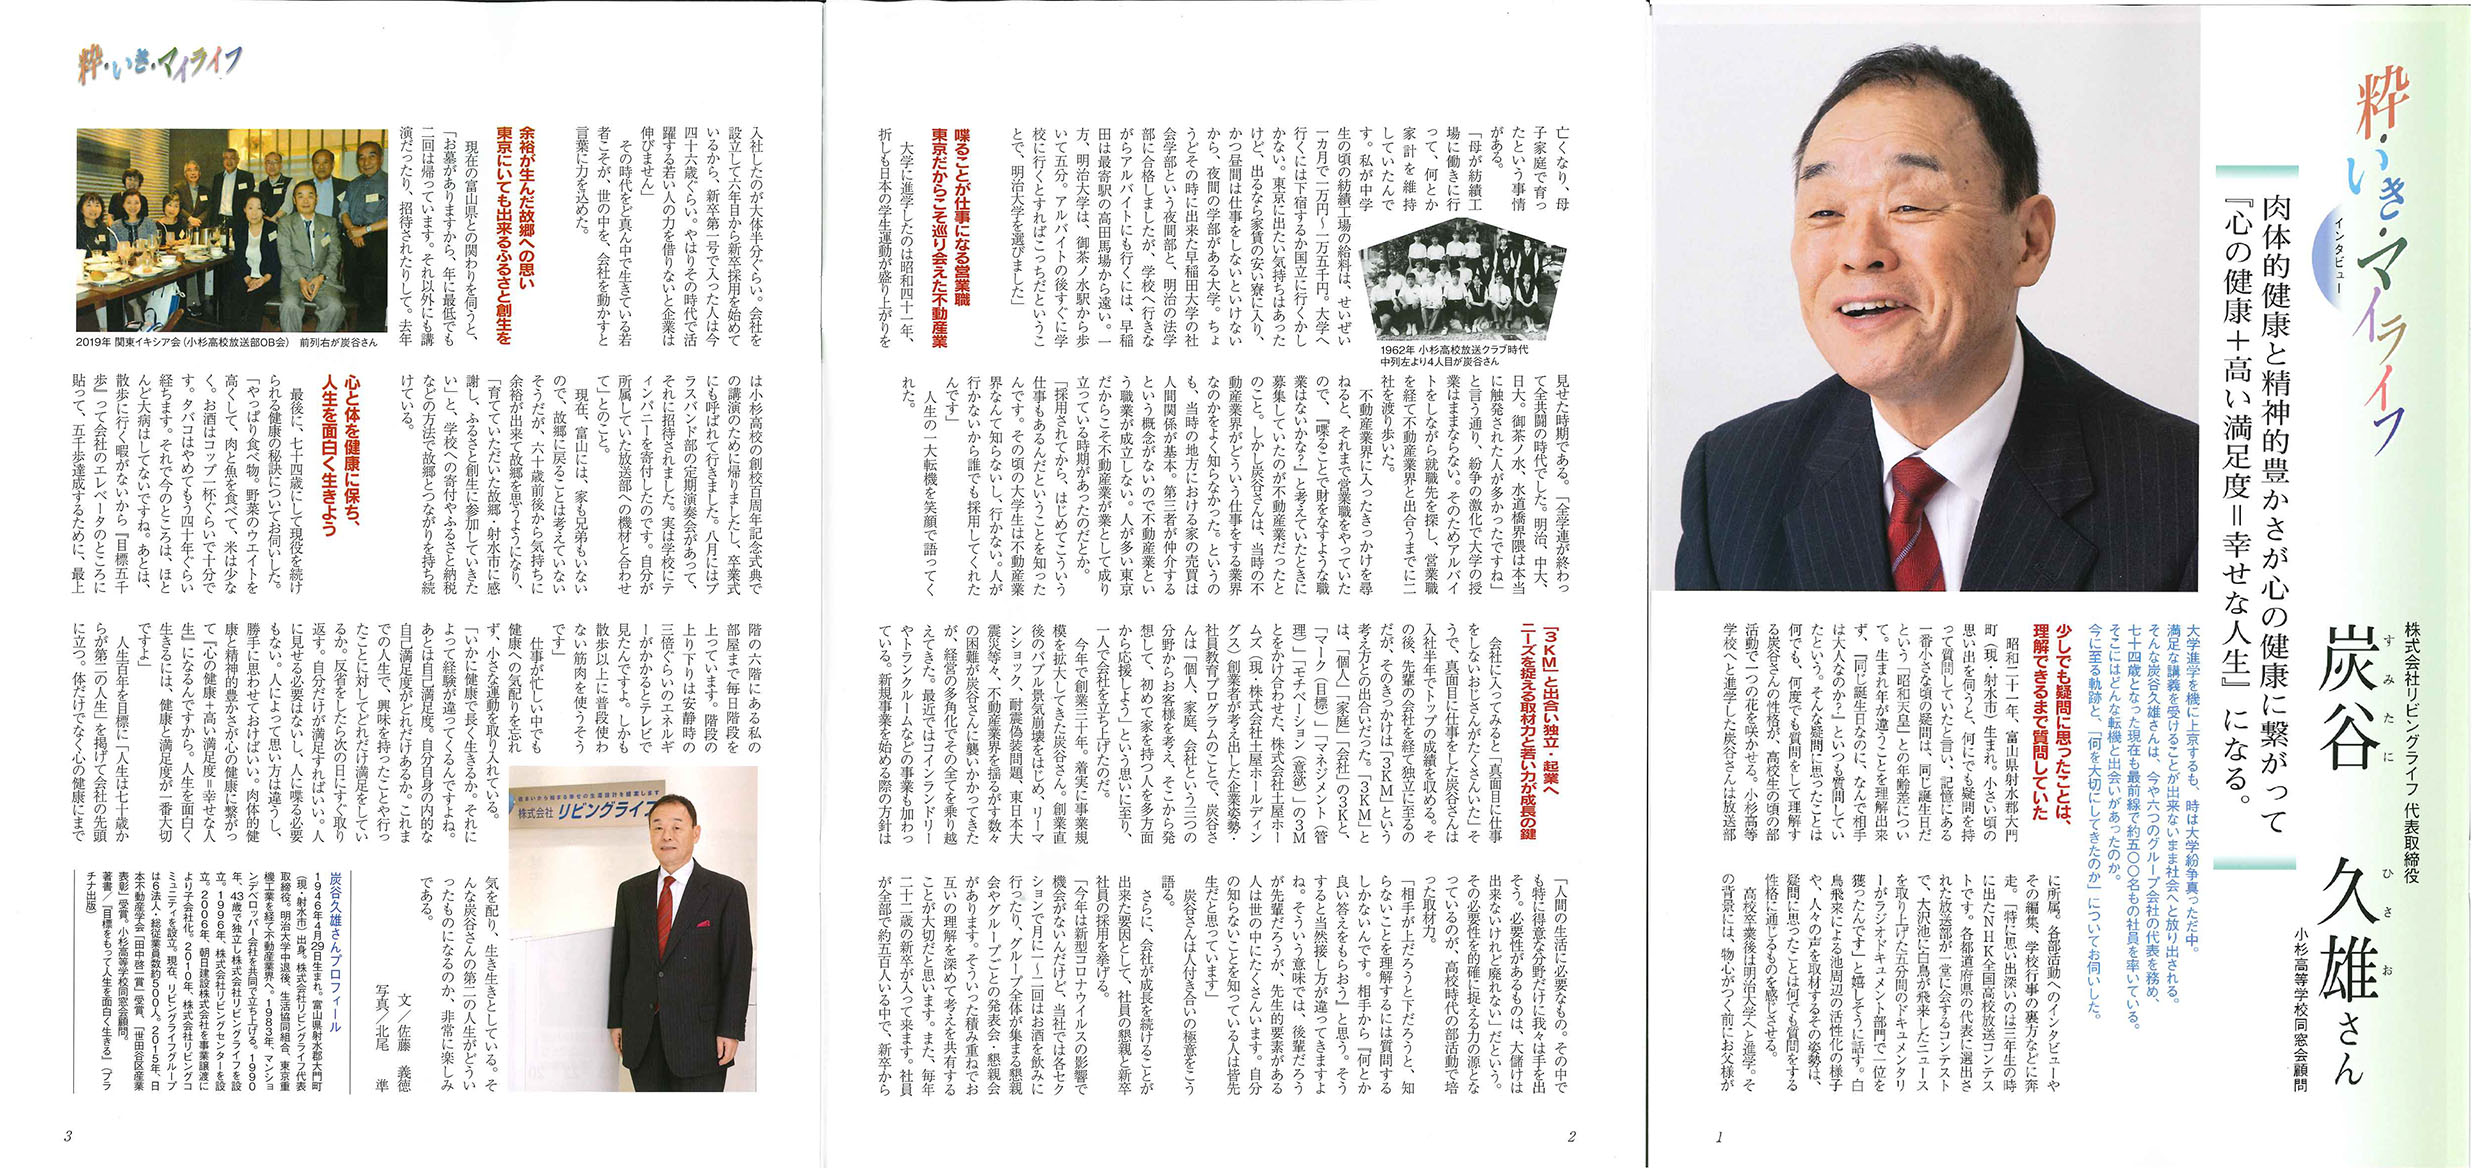 富山の生活情報誌「ＶＩＴＡ」に当社代表炭谷のインタビュー記事が掲載されました